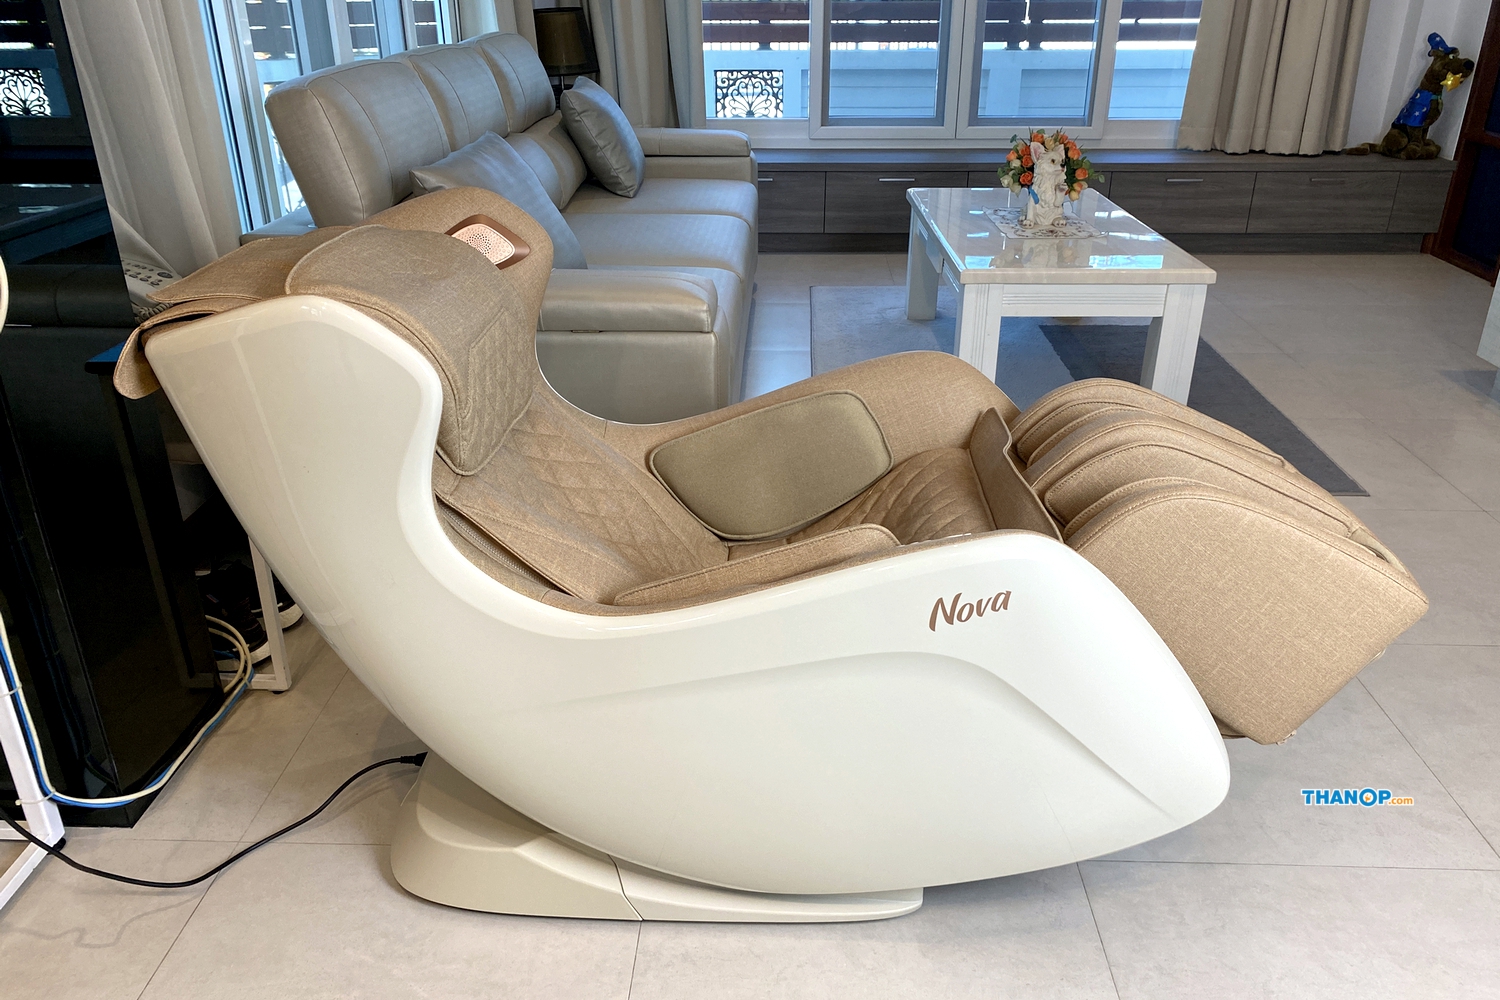 rester-nova-oi2218a-backrest-fully-reclined